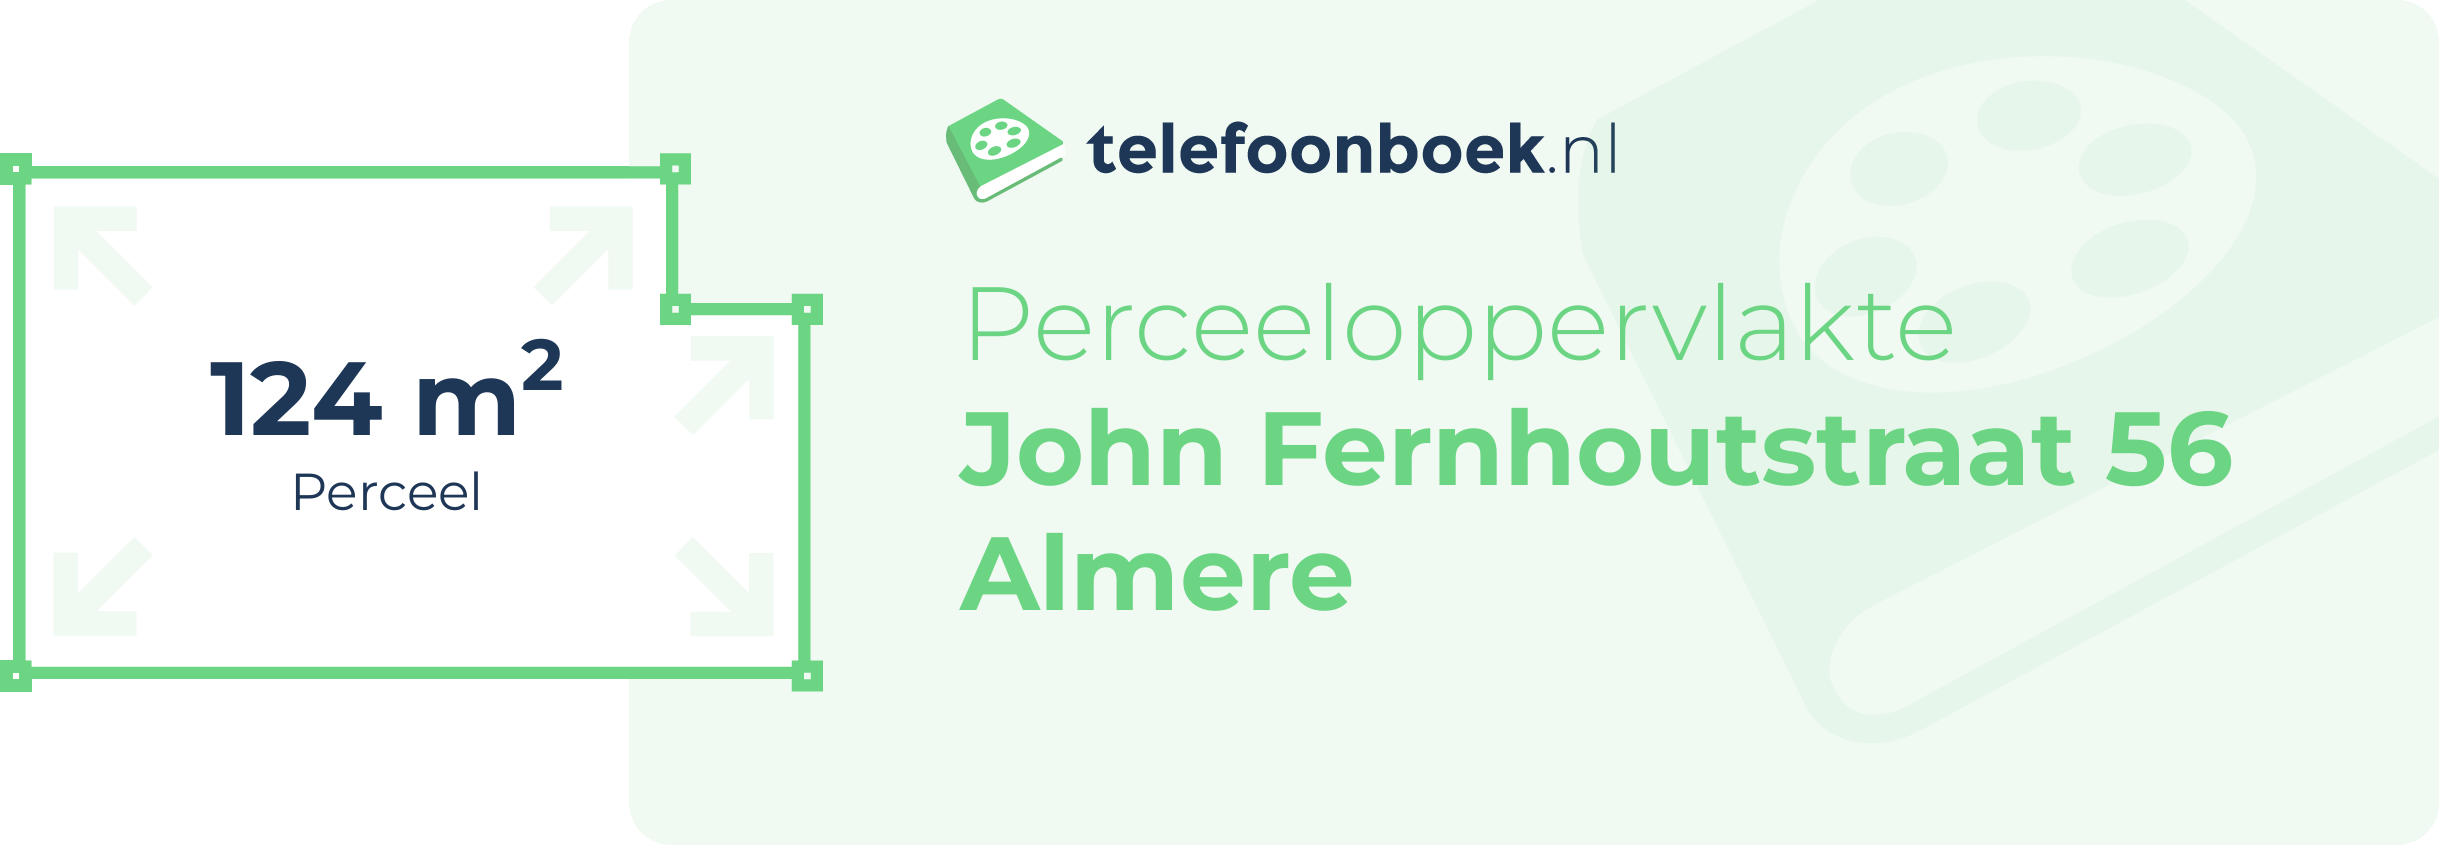 Perceeloppervlakte John Fernhoutstraat 56 Almere